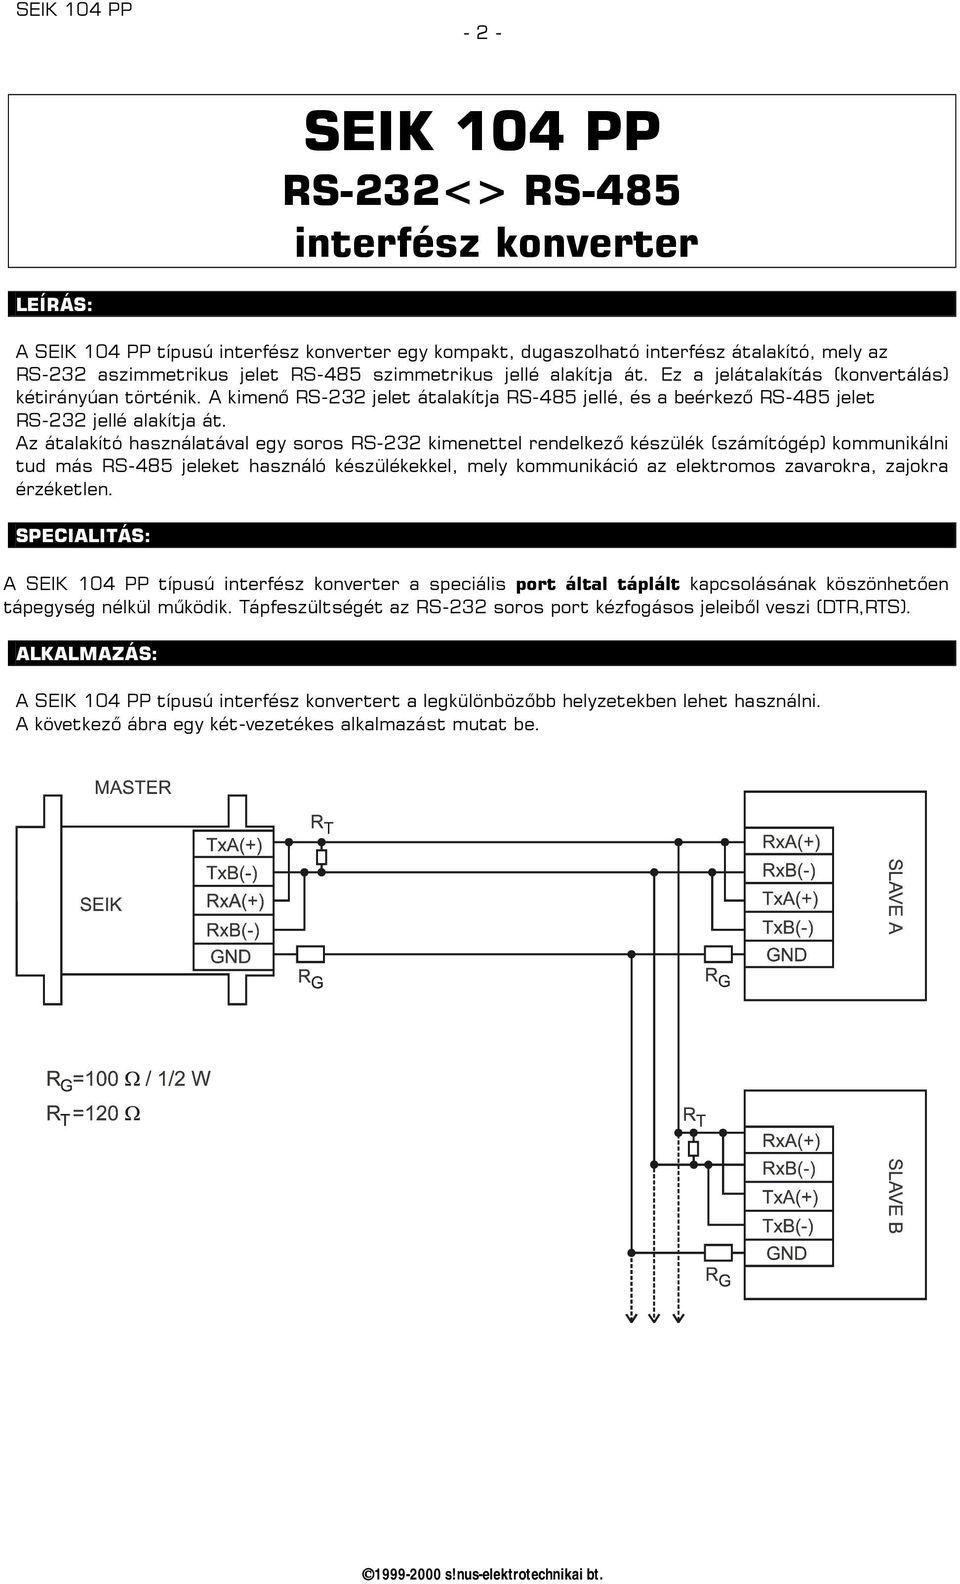 Az átalakító használatával egy soros RS-232 kimenettel rendelkező készülék (számítógép) kommunikálni tud más RS-485 jeleket használó készülékekkel, mely kommunikáció az elektromos zavarokra, zajokra